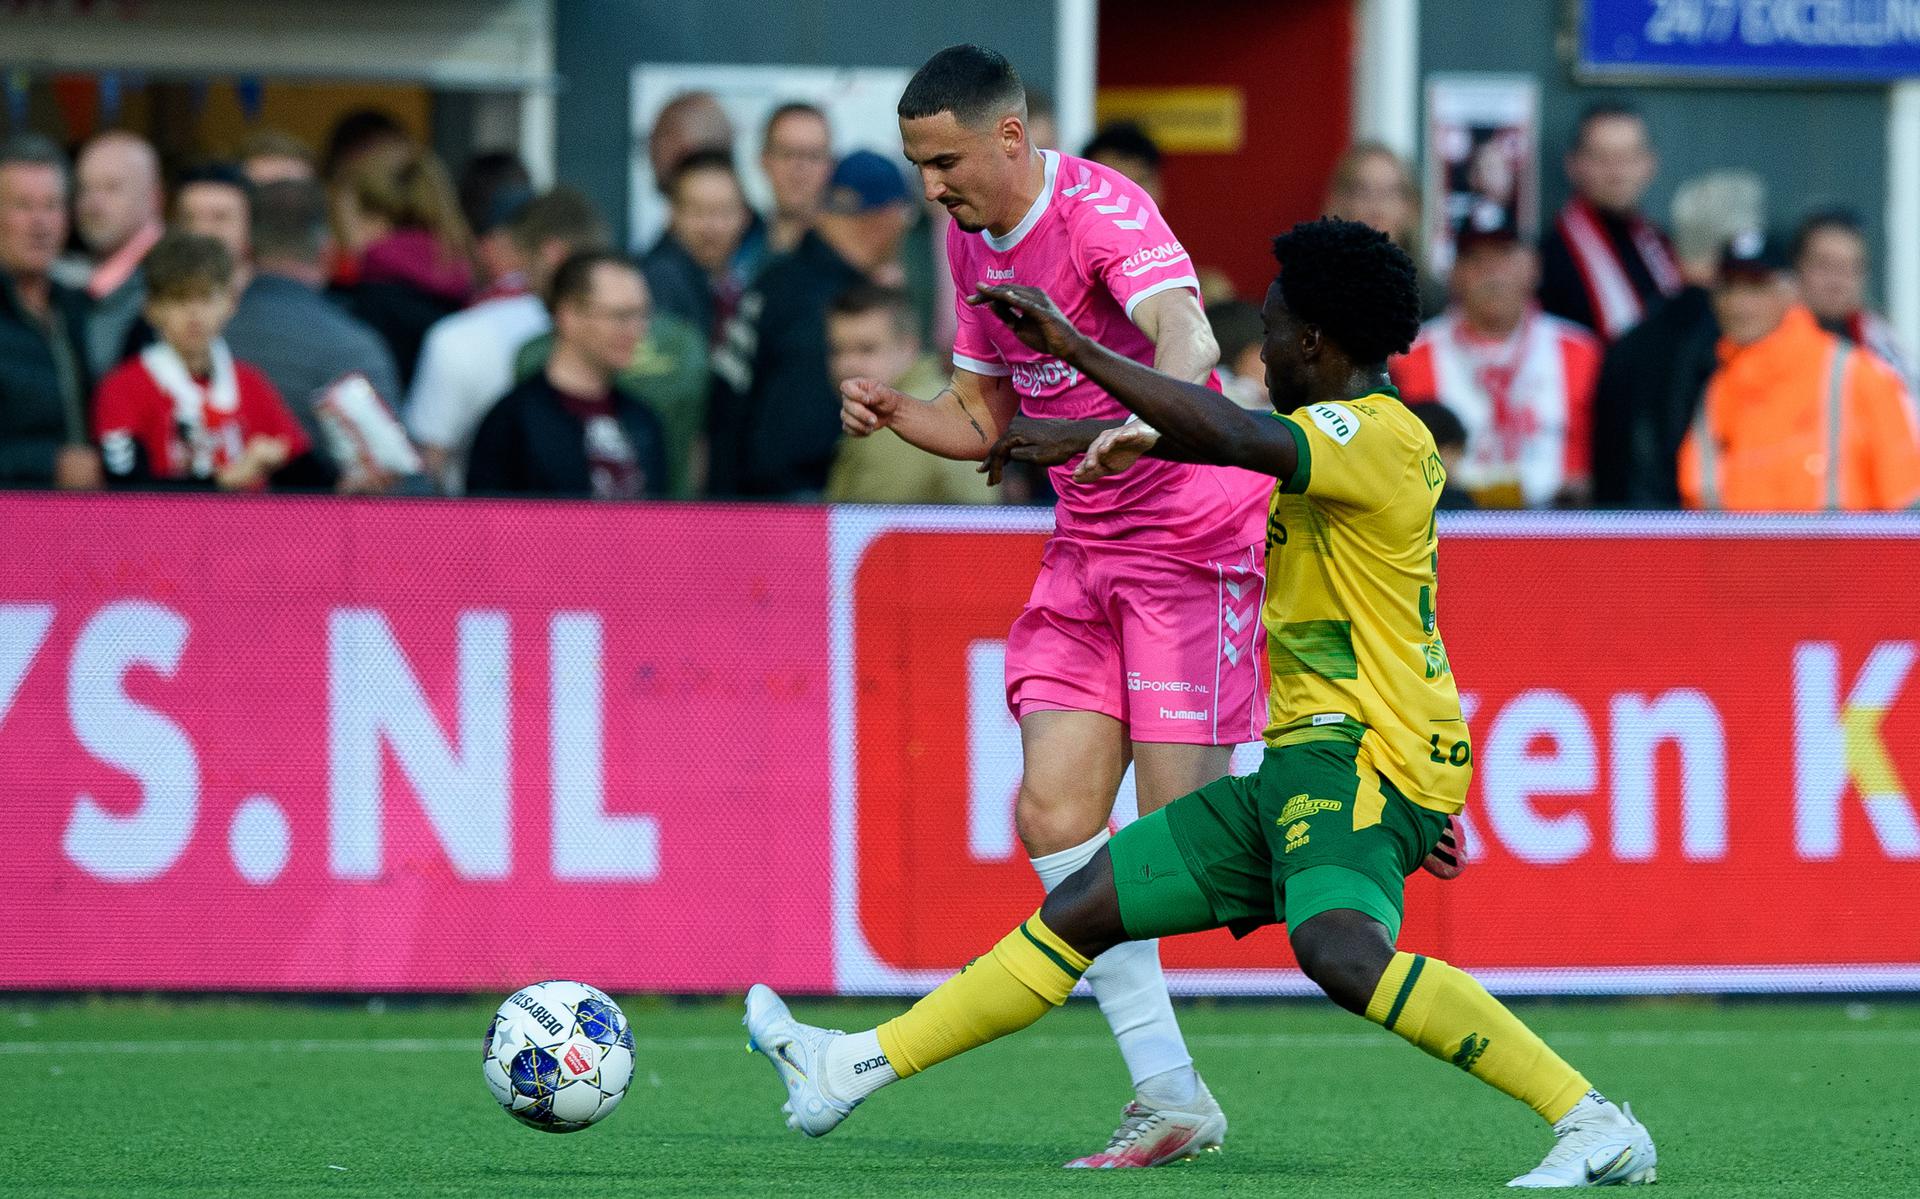 FC Emmen speelt tegen Go Ahead Eagles in een roze tenue. Vorig jaar won de ploeg in het roze met 3-0 van ADO Den Haag.